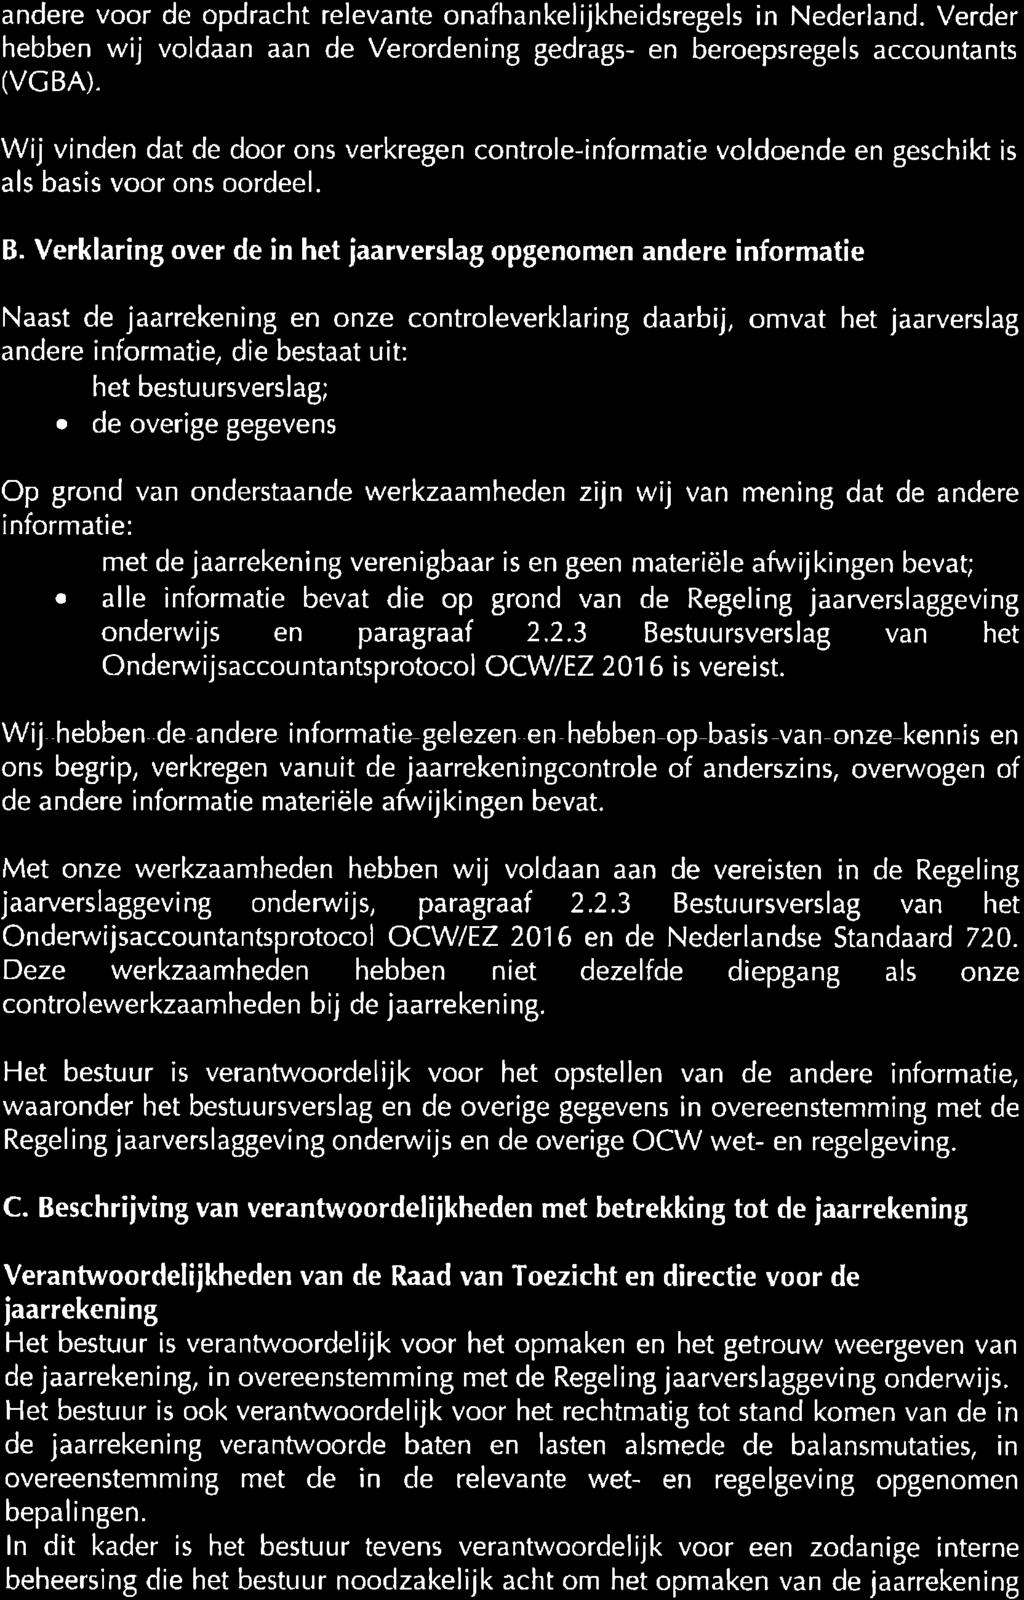 andere voor de opdracht relevante onafhankelijkheidsregels in Nederland. Verder hebben wij voldaan aan de Verordening gedrags- en beroepsregels accountants (VCBA).